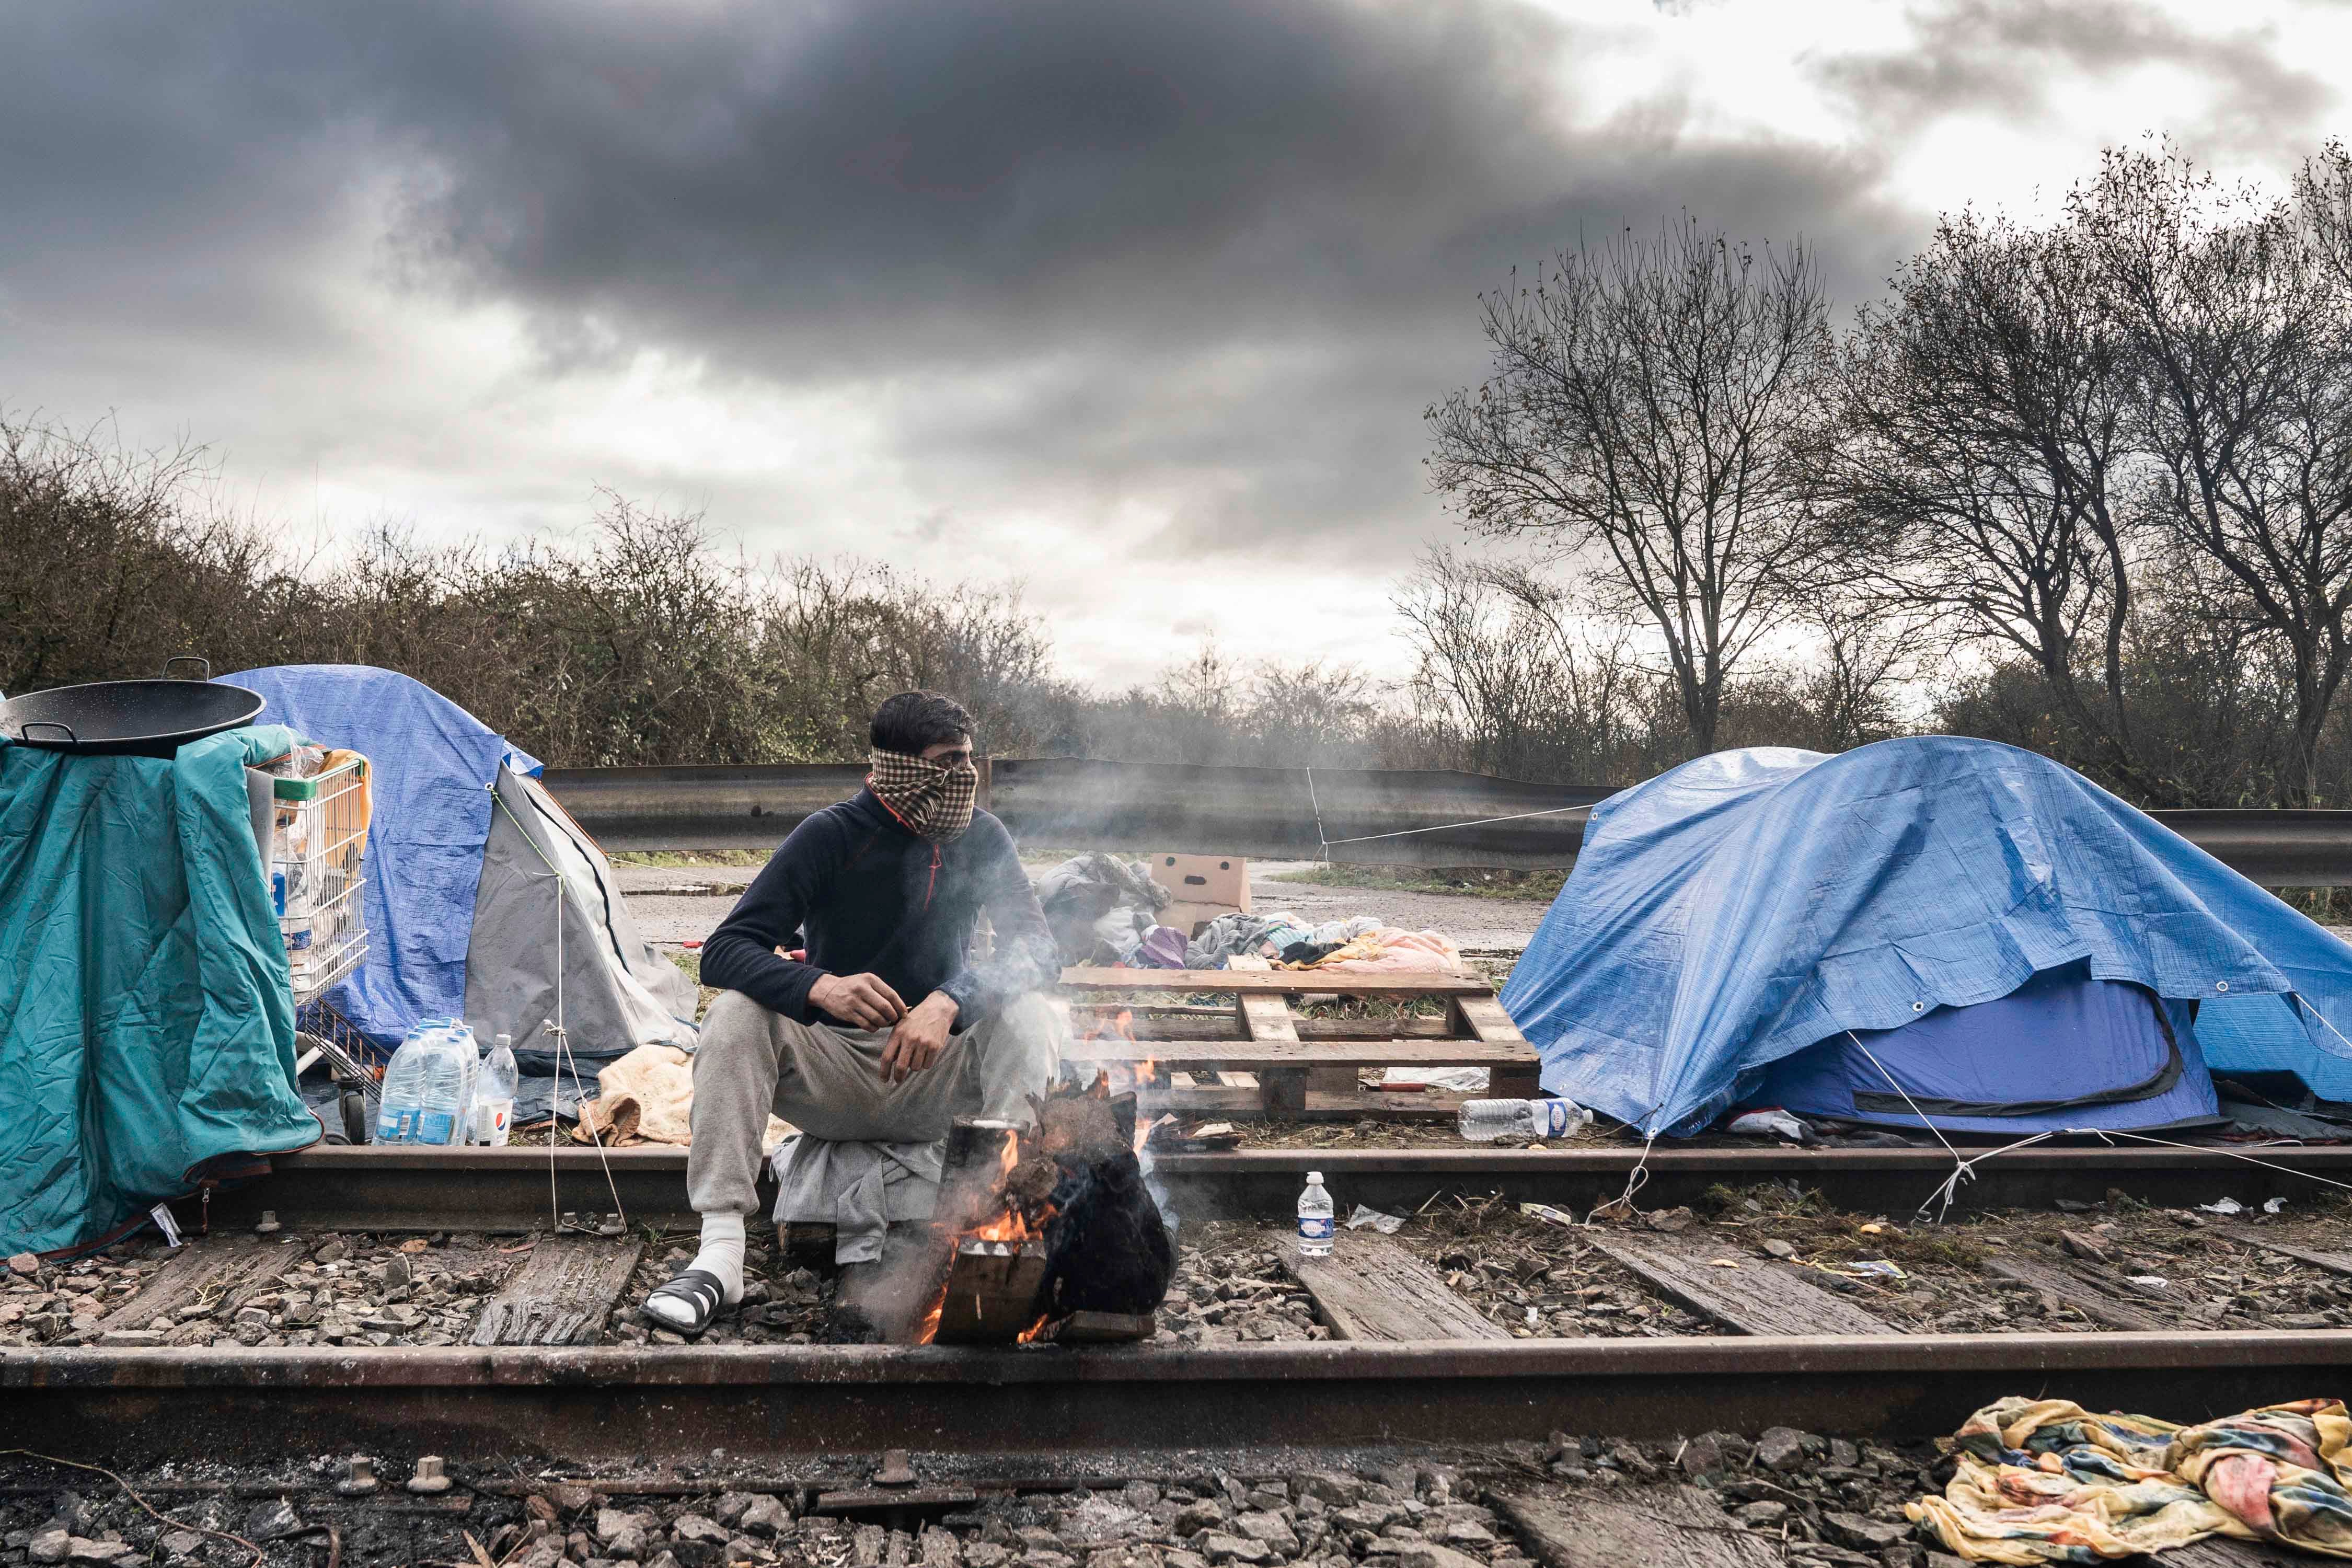 Un migrant se réchauffe en brûlant du bois de chauffage dans un camp de migrants improvisé dans la région de Dunkerque, dans le nord de la France